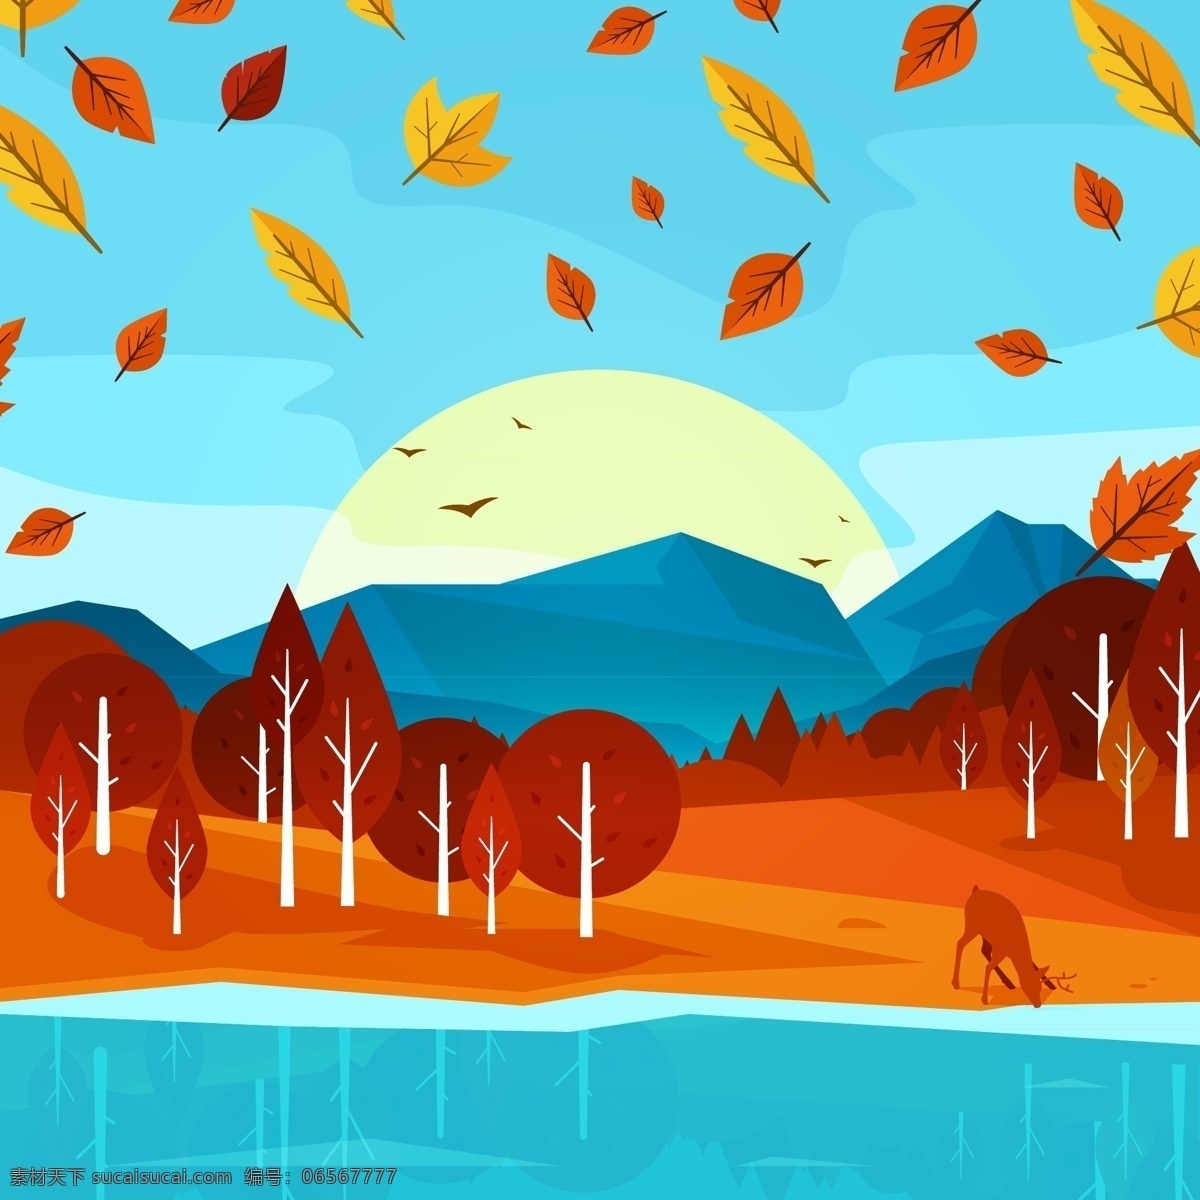 秋天 里 风景 插画 场景 大山 自然 红叶 河面 落叶